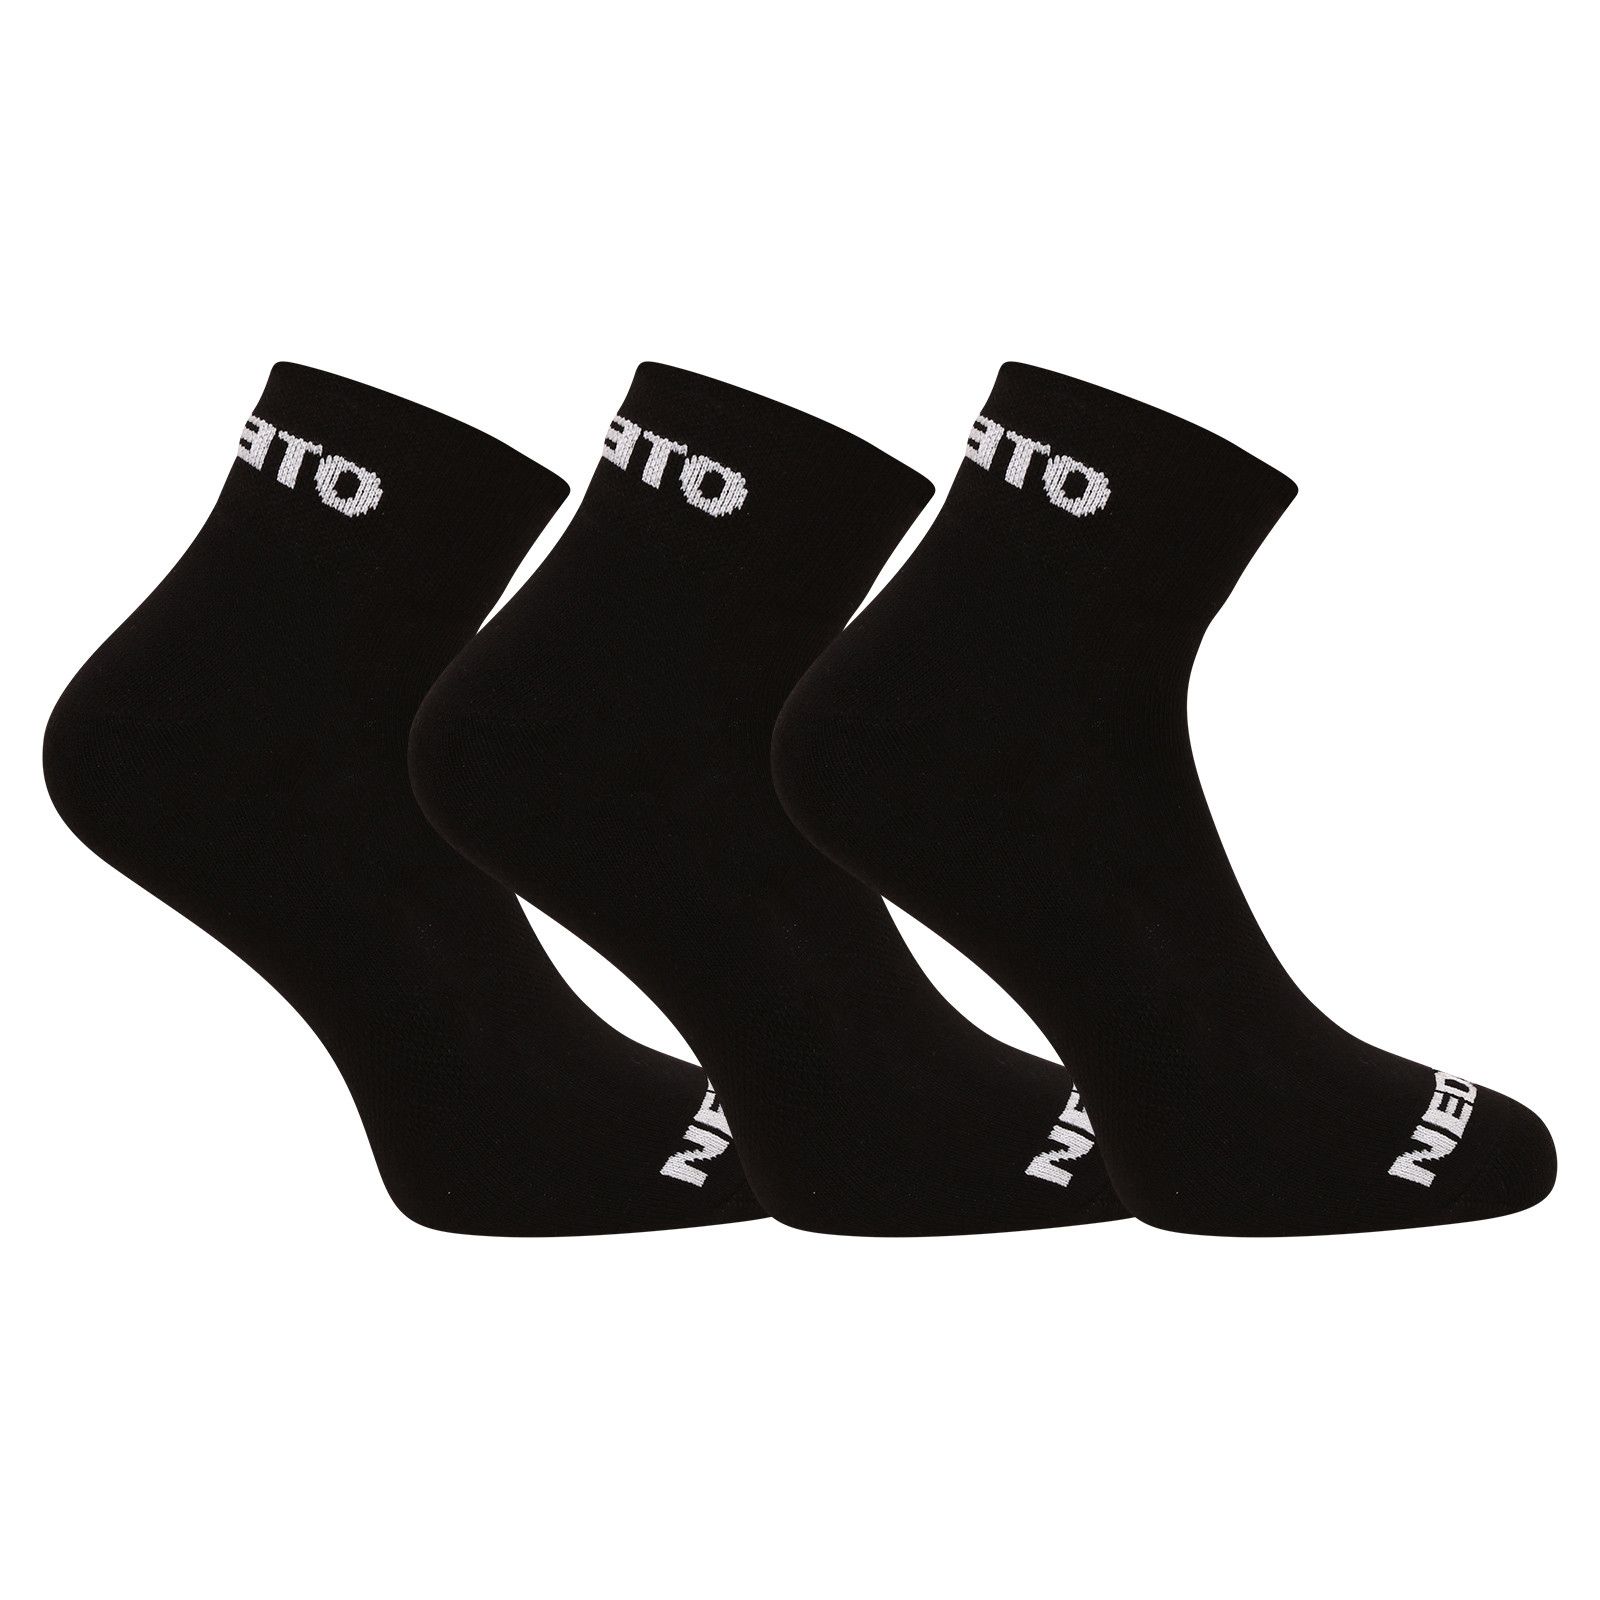 E-shop 3PACK ponožky Nedeto kotníkové černé